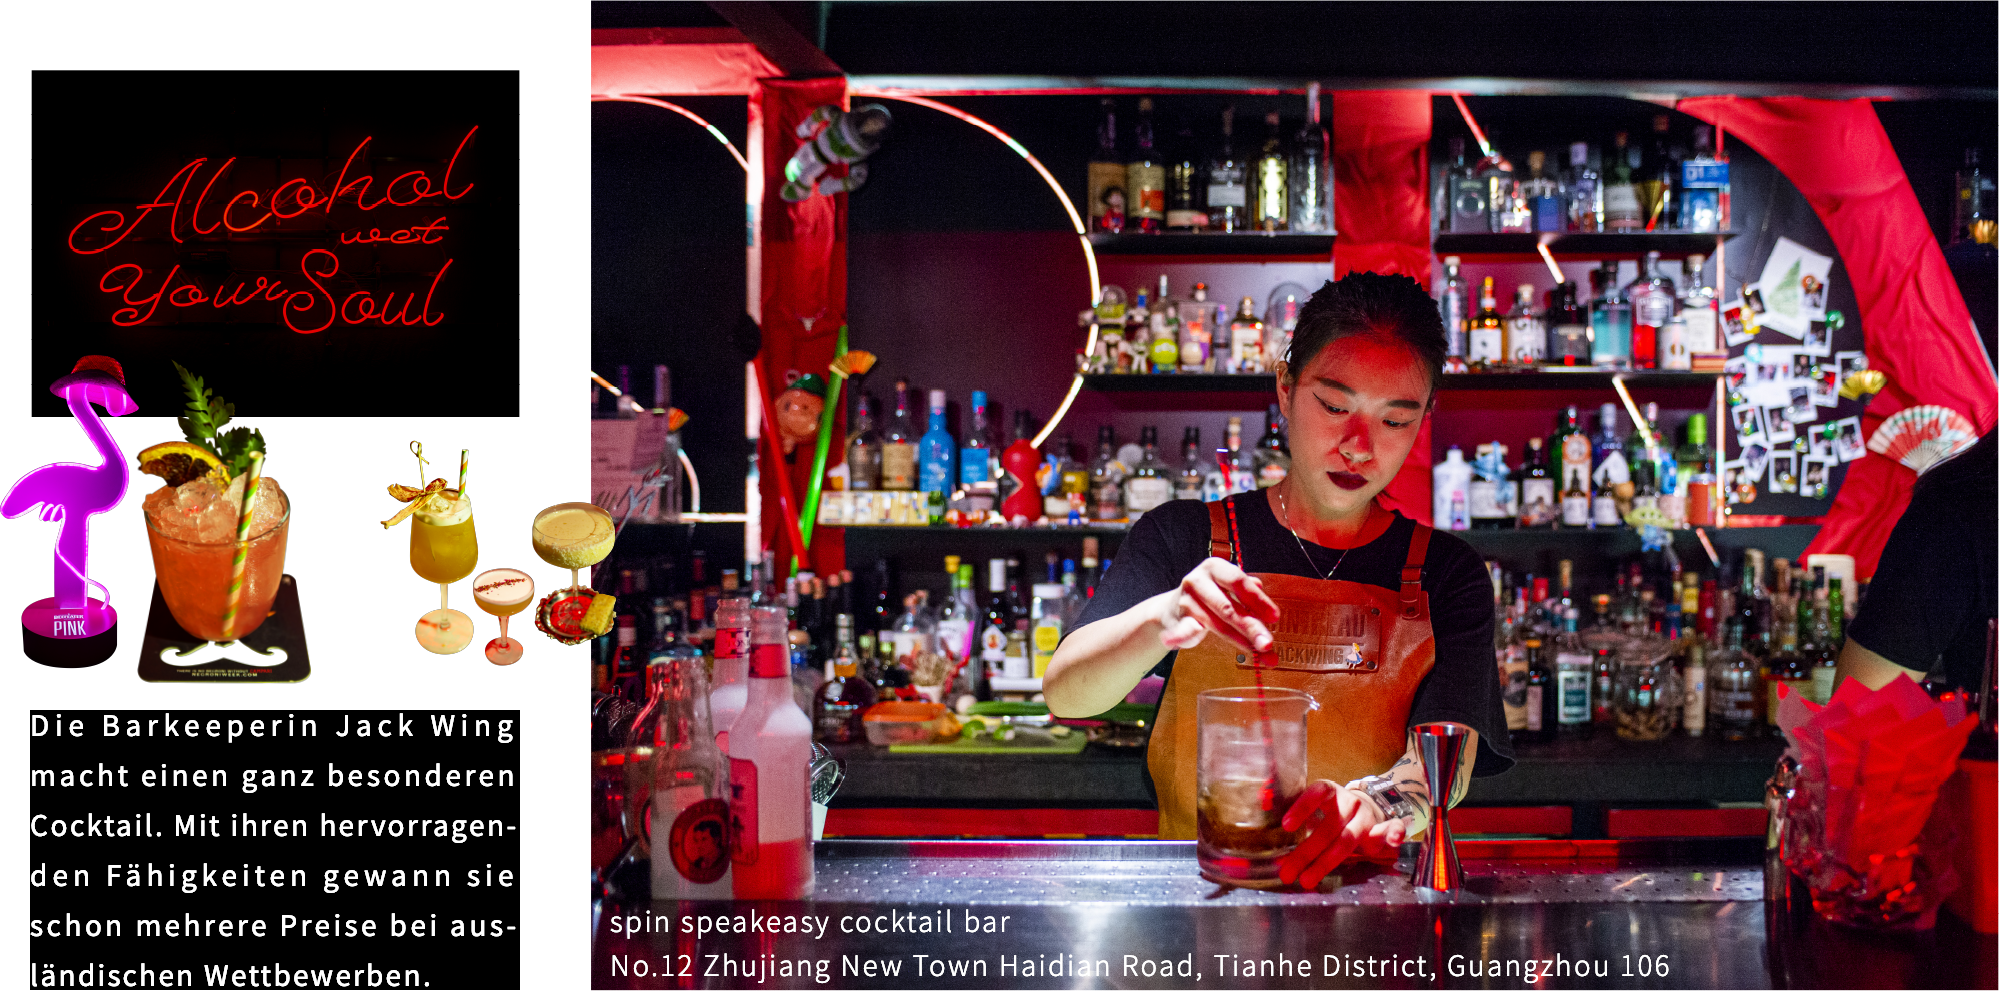 Die Barkeeperin Jack Wing macht einen ganz besonderen Cocktail. Mit ihren hervorragenden Fähigkeiten gewann sie schon mehrere Preise bei ausländischen Wettbewerben.